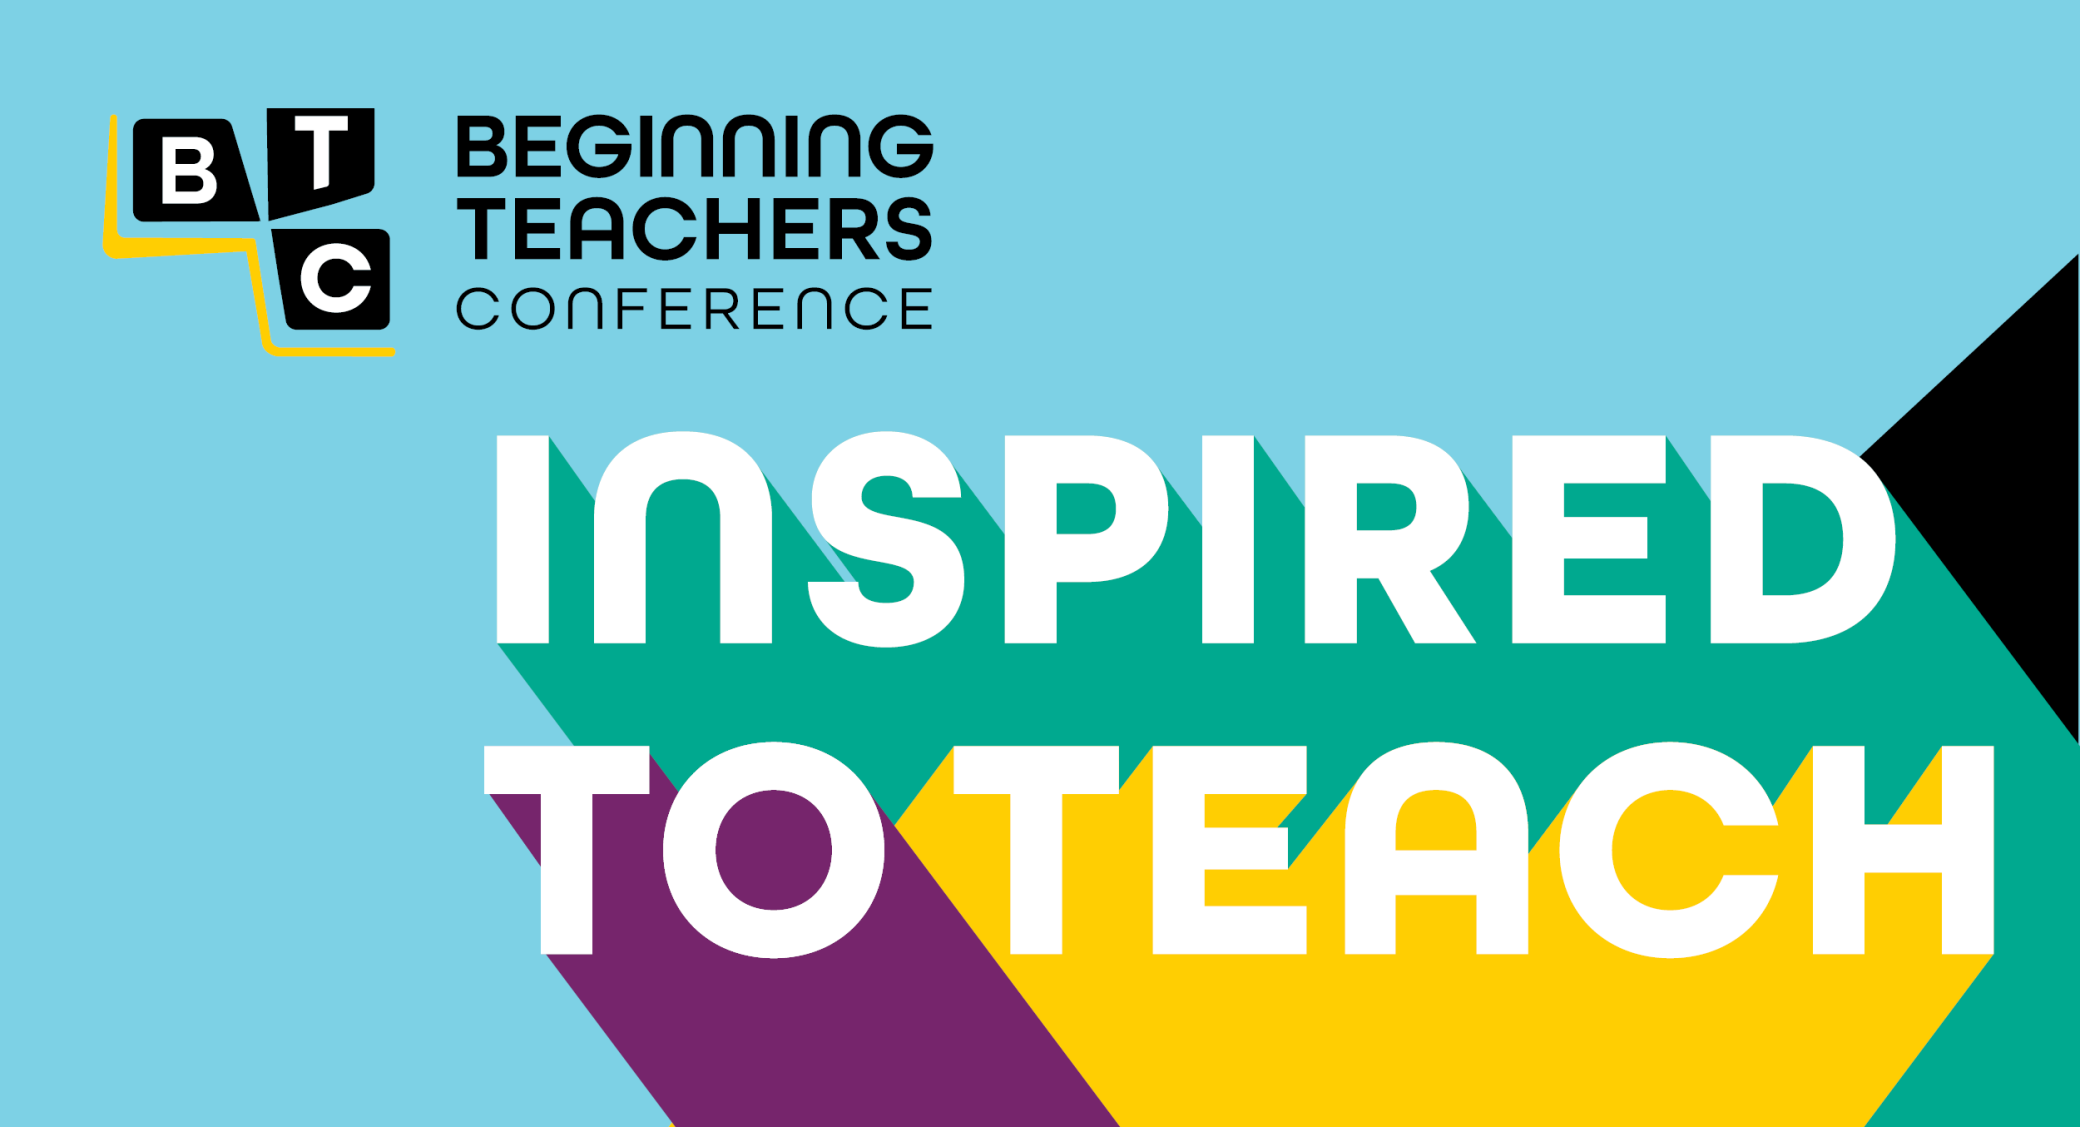 Beginning teachers Alberta Teachers' Association